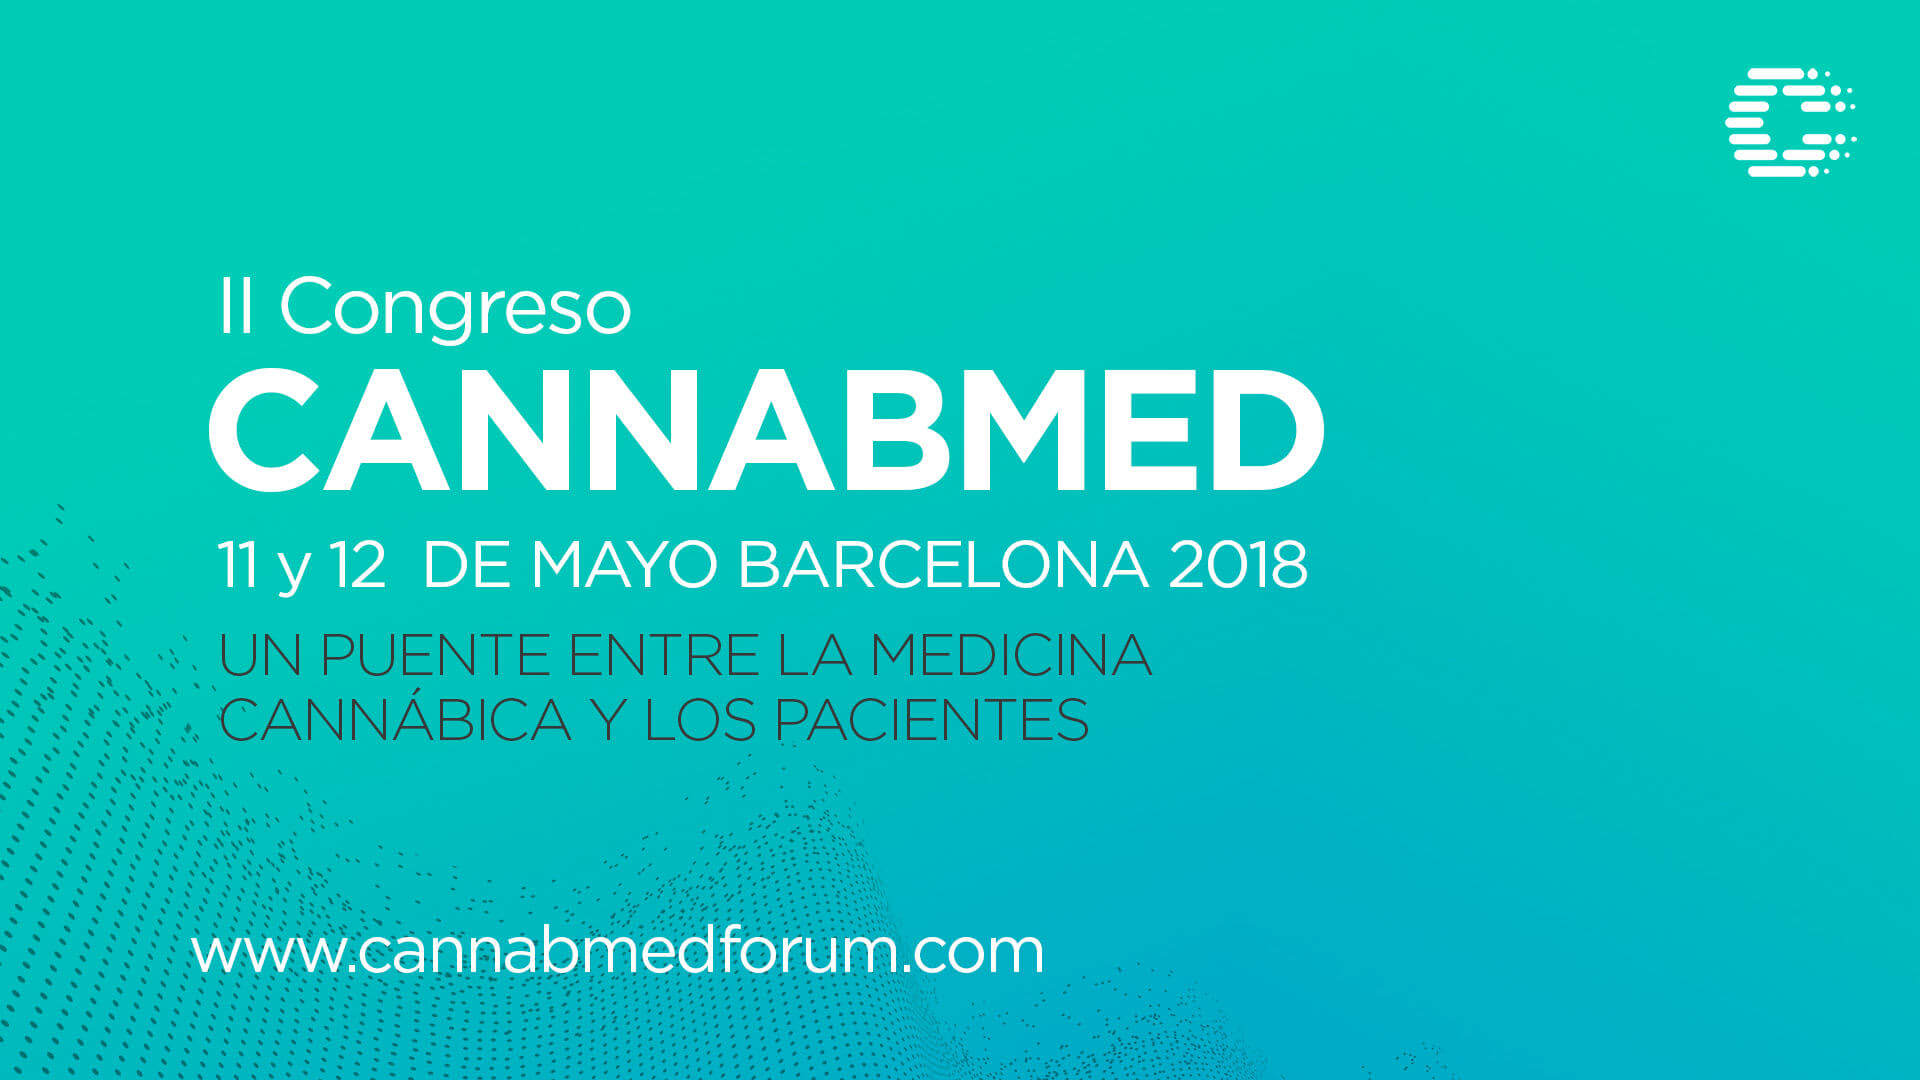 II Congreso Cannabmed Barcelona 2018